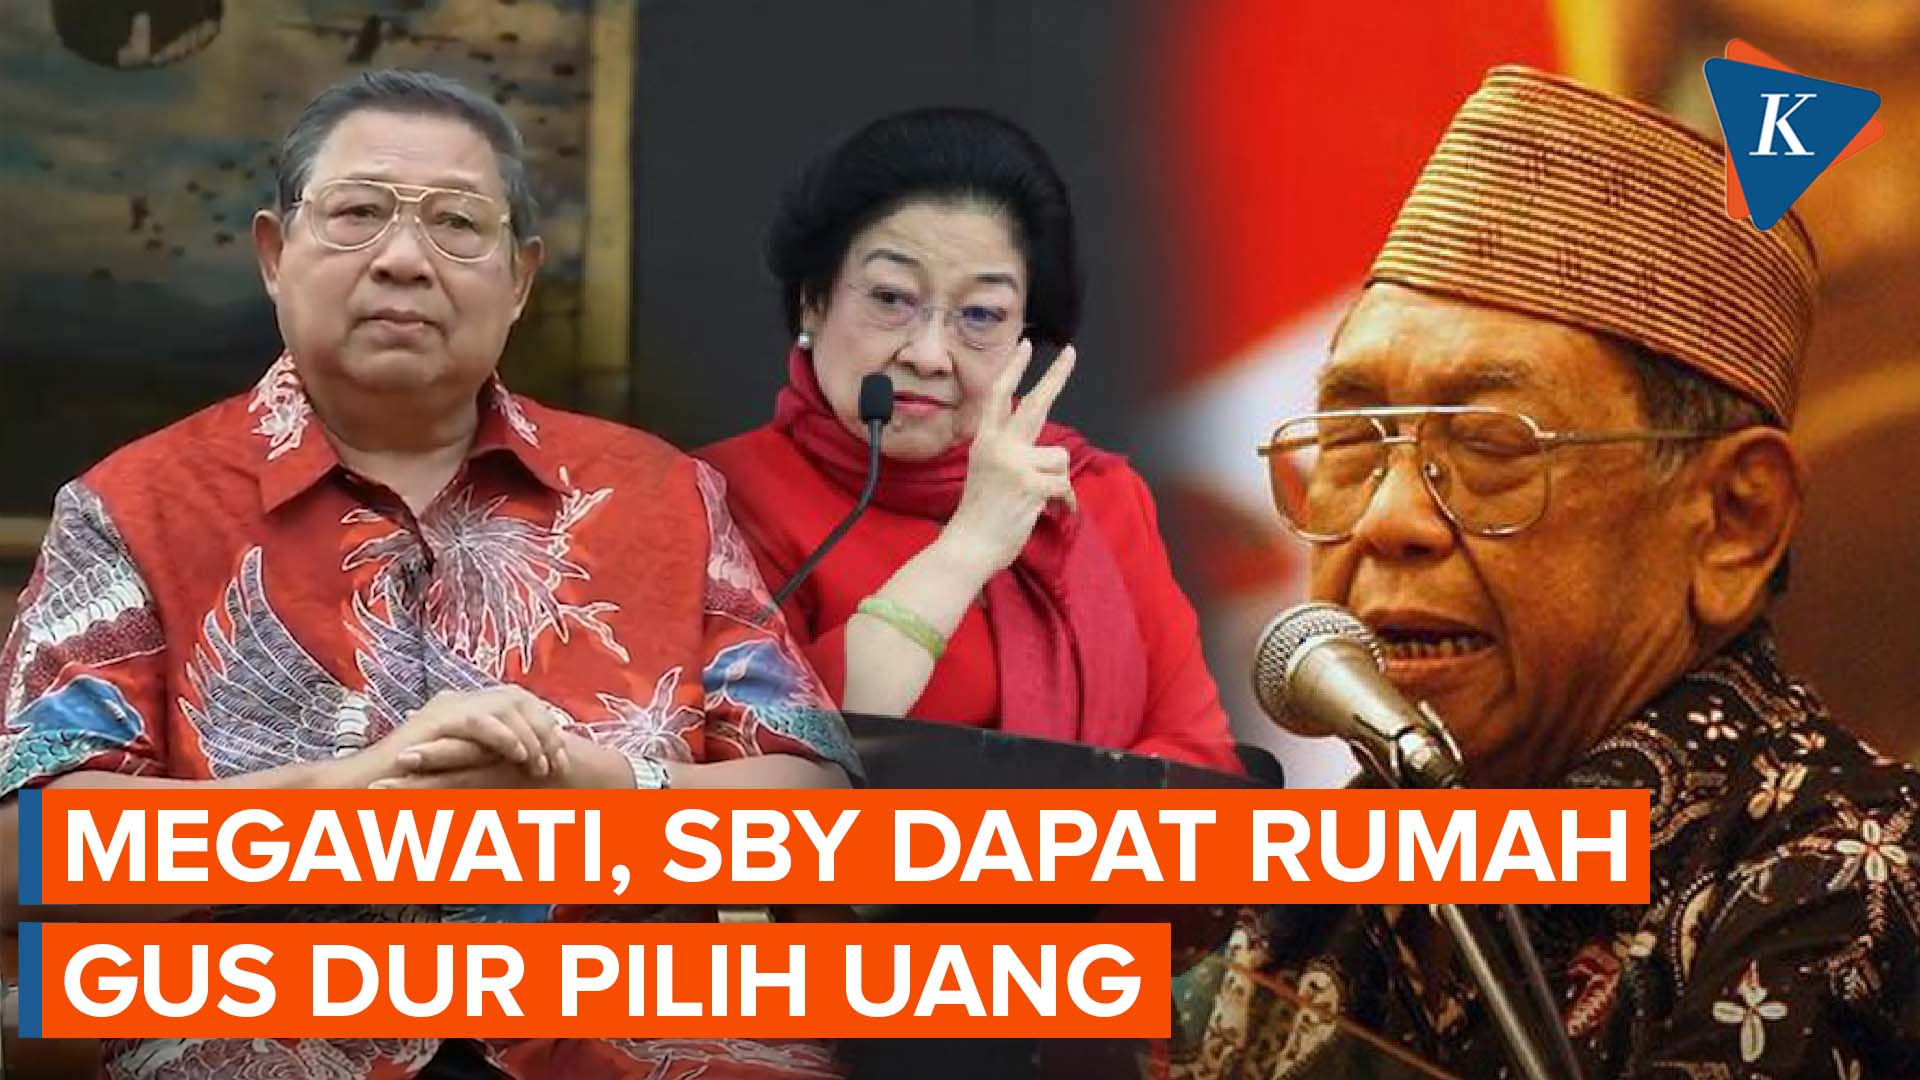 Tak Hanya Jokowi, Megawati dan SBY Juga Dapat Rumah dari Negara, Gus Dur Pilih Uang